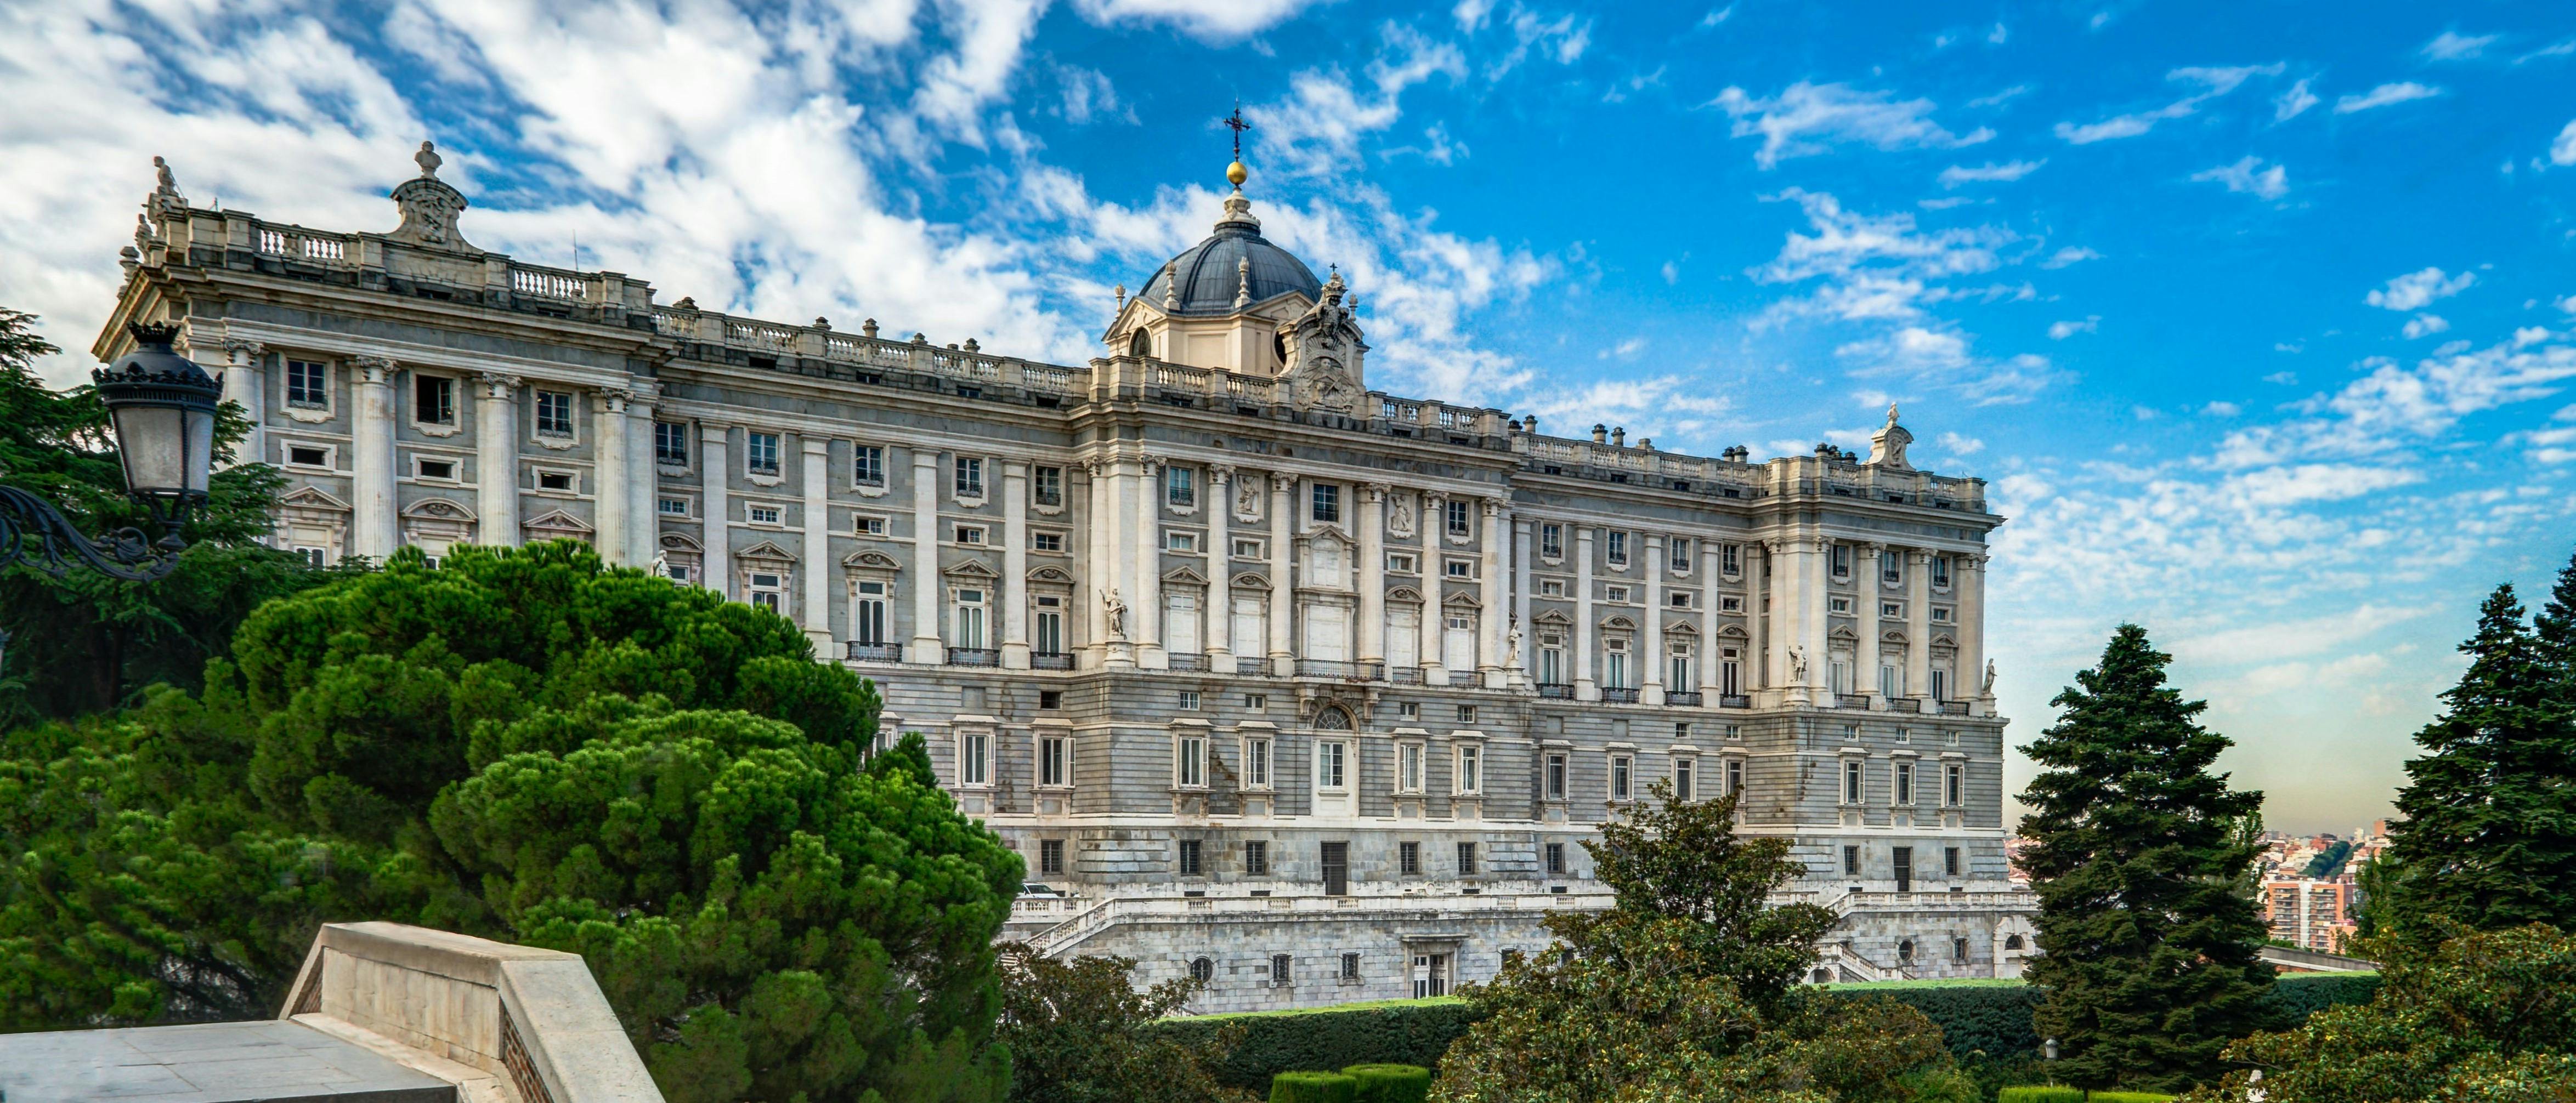 Zwiedzanie Pałacu Królewskiego w Madrycie z przewodnikiem i wstęp bez kolejki